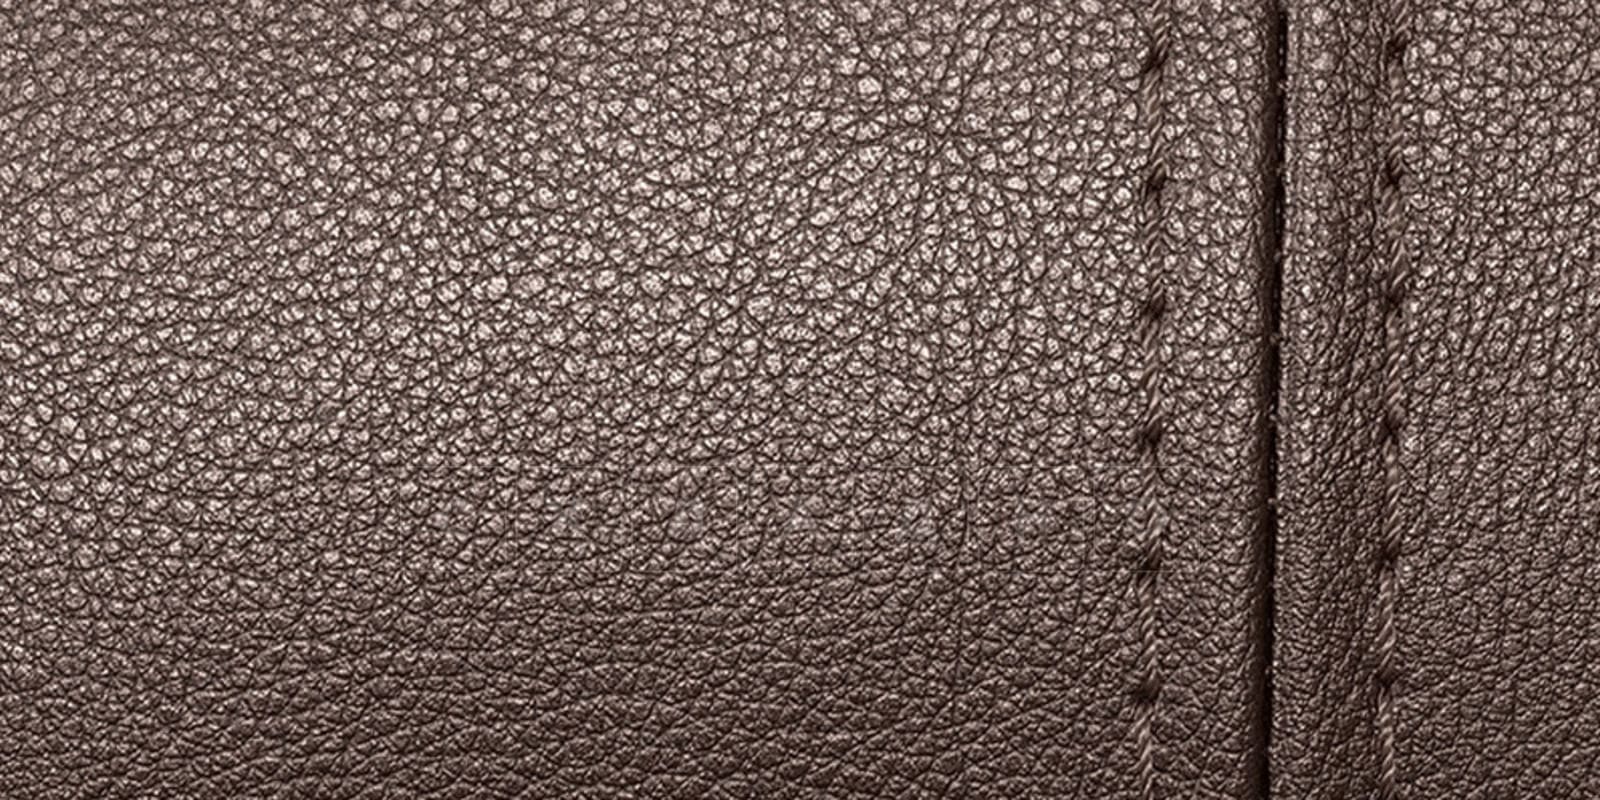 Мягкая кровать Вирджиния 160 см экокожа шоколадного цвета фото 8 | интернет-магазин Складно